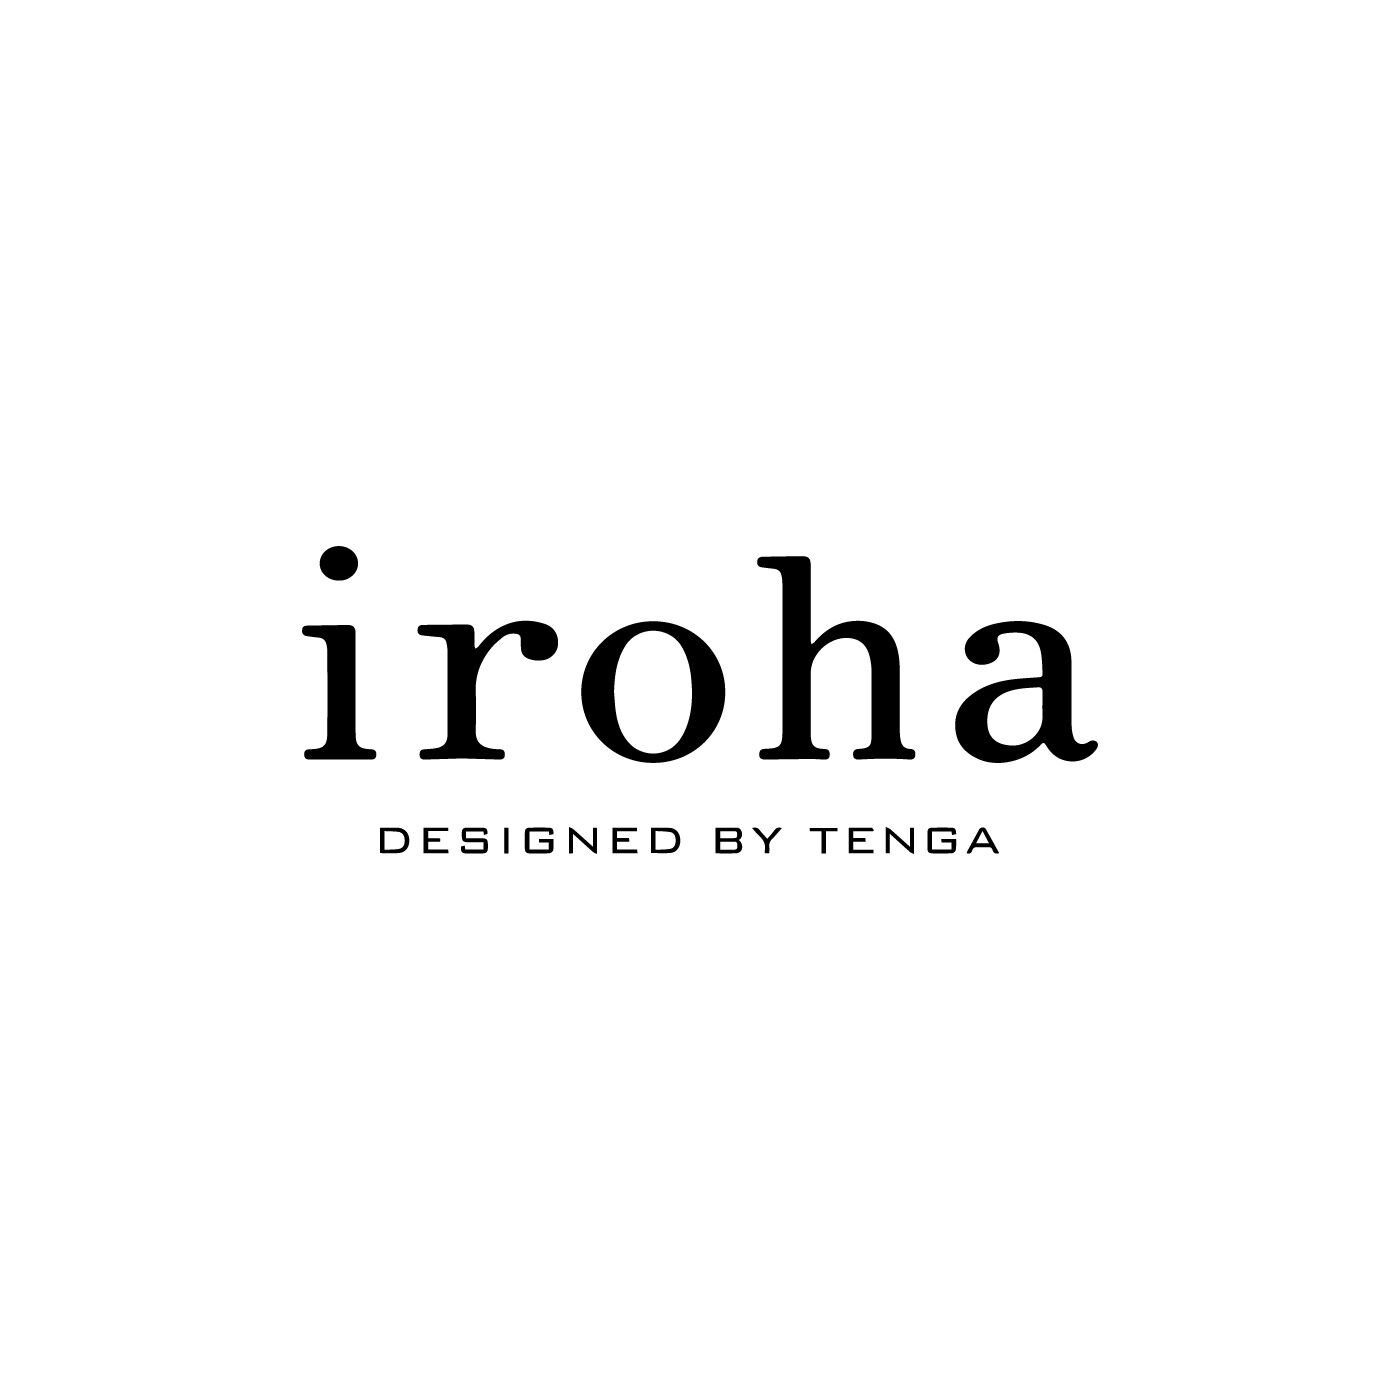 フェリシモコレクション|iroha　ゆきだるま|寝る前にパックをするように、セルフケアのひとつとして、からだが求める「気持ちよさ」に応えることは、もっと大切にしてもいいこと。そんな思いで2013年3月から「iroha」はスタートしました。